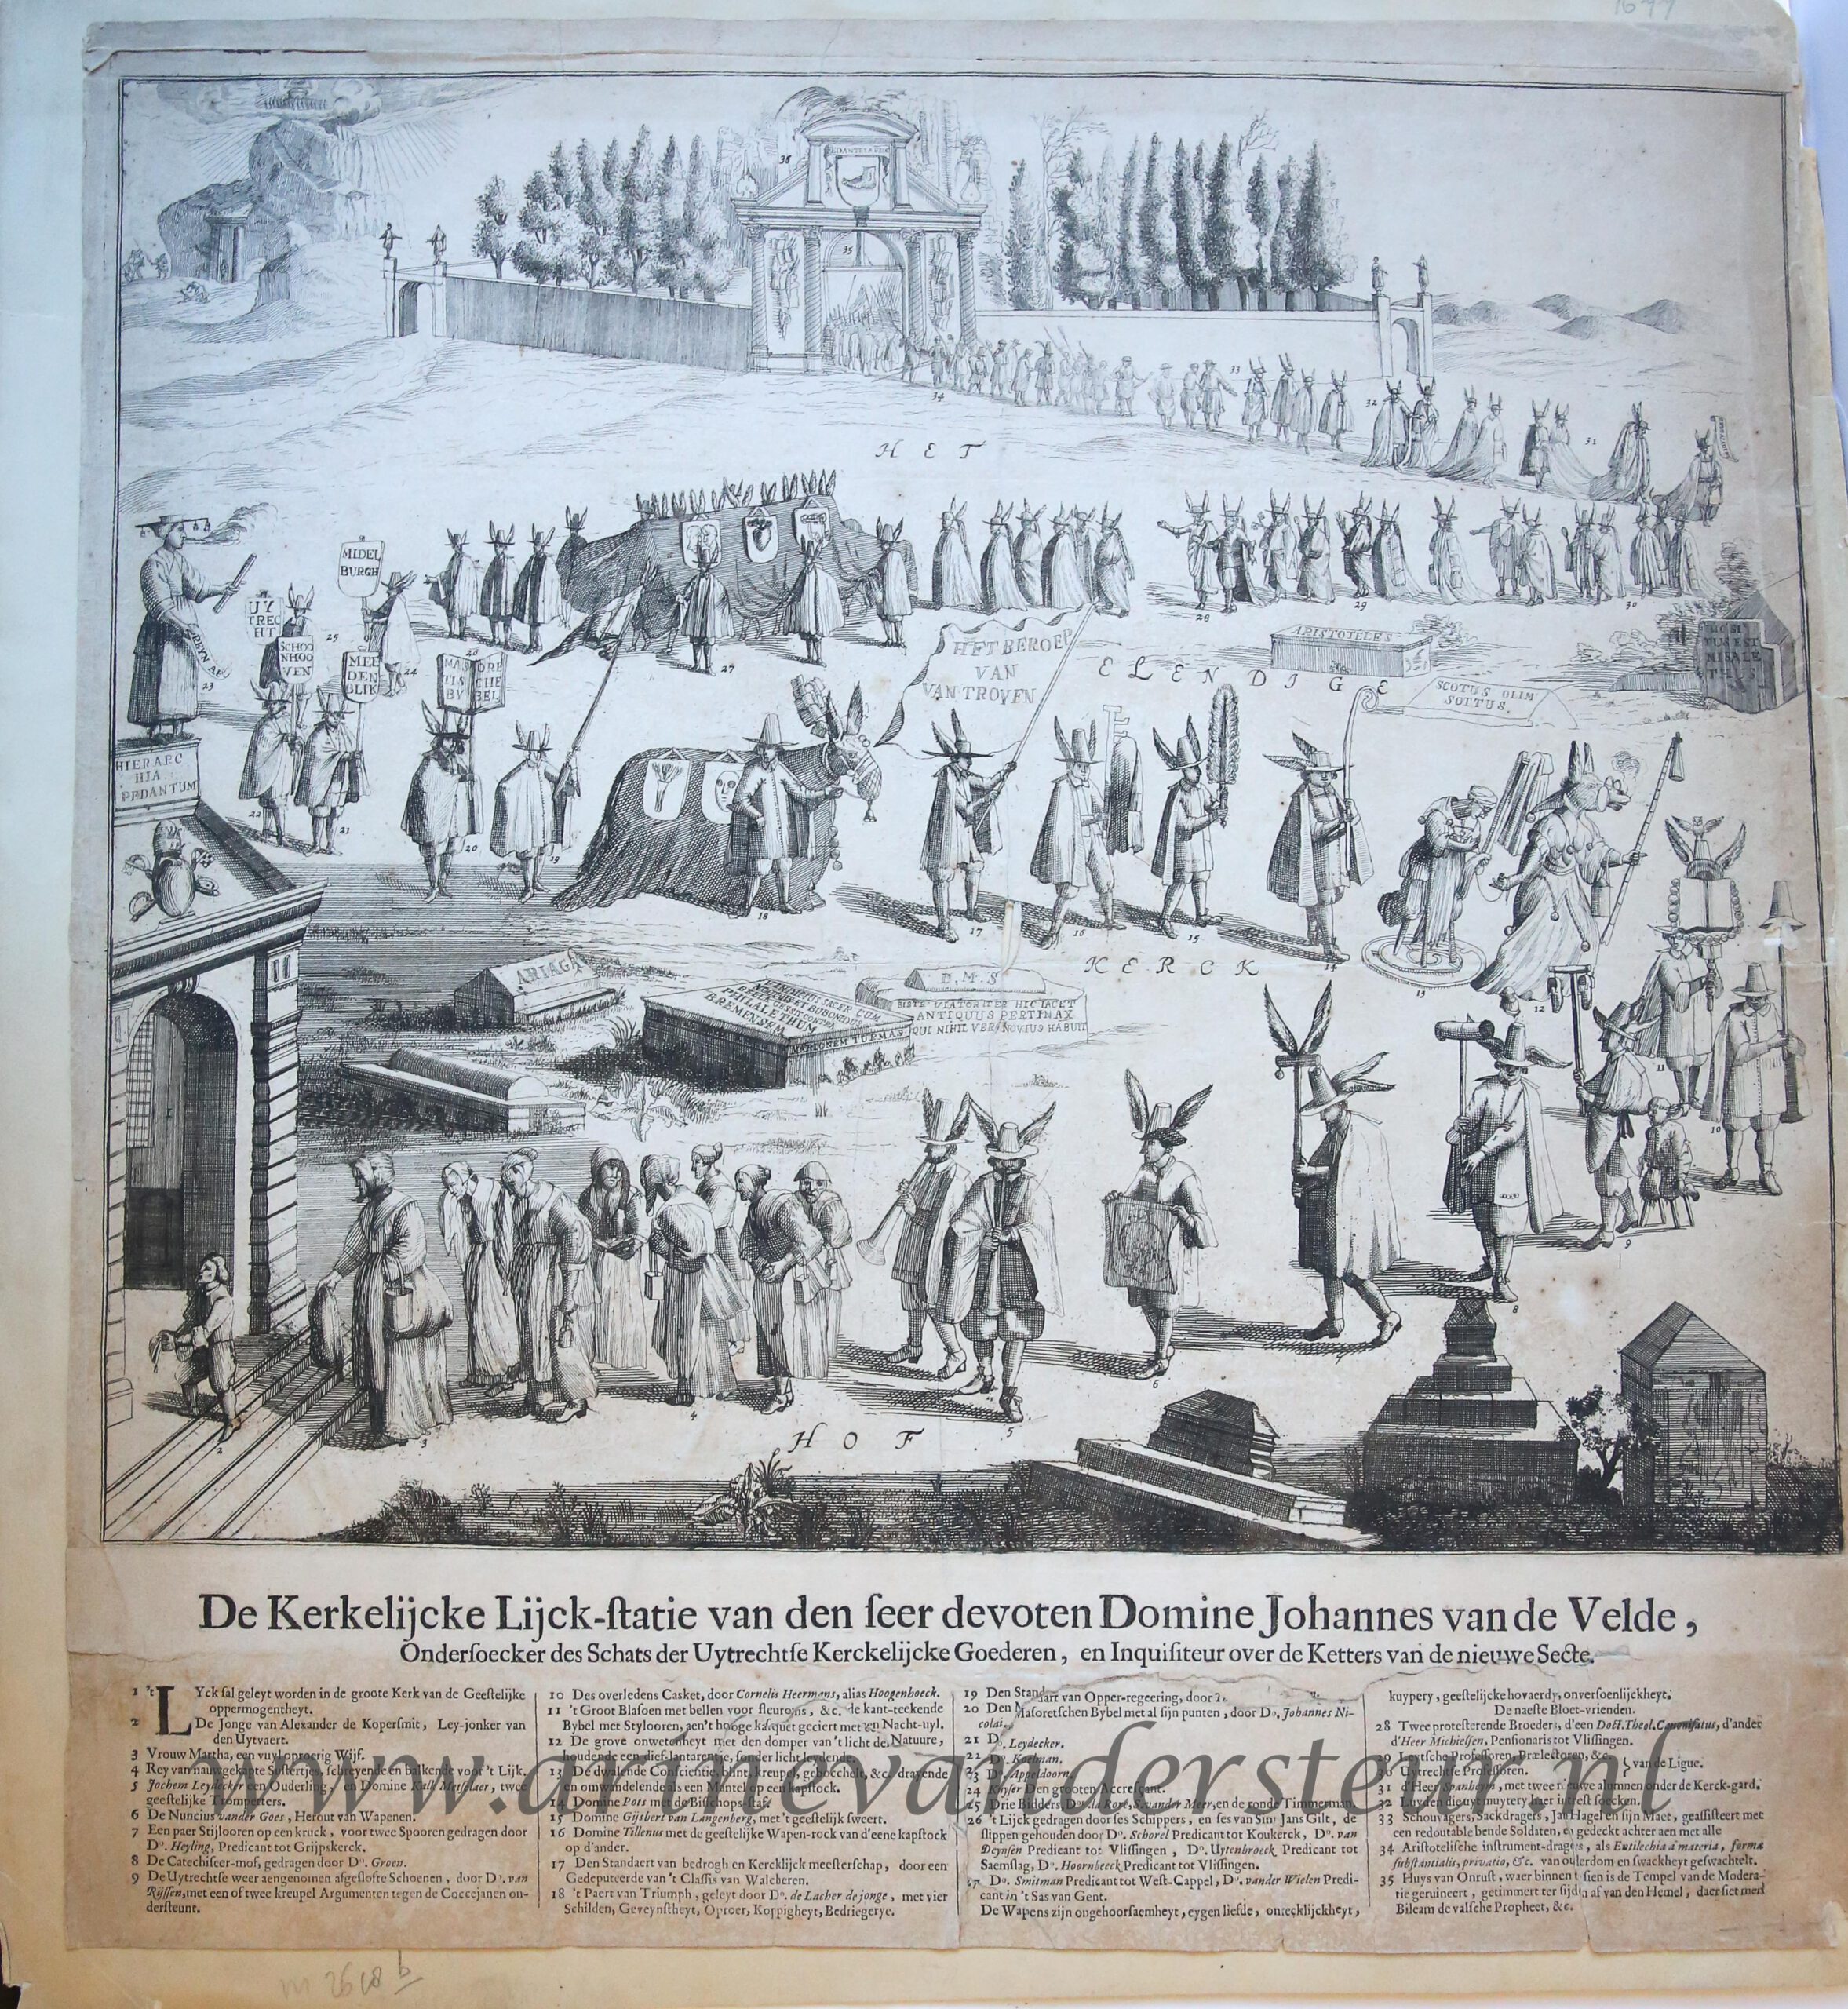 [Antique etching and letterpress, Romeyn de Hooghe] De kerkelijke lijck-statie van den seer devoten Domine Johannes van de Velde [Begrafenisstoet van Ds A. van de Velde, 14 juni 1677], published 1677, 1 p.